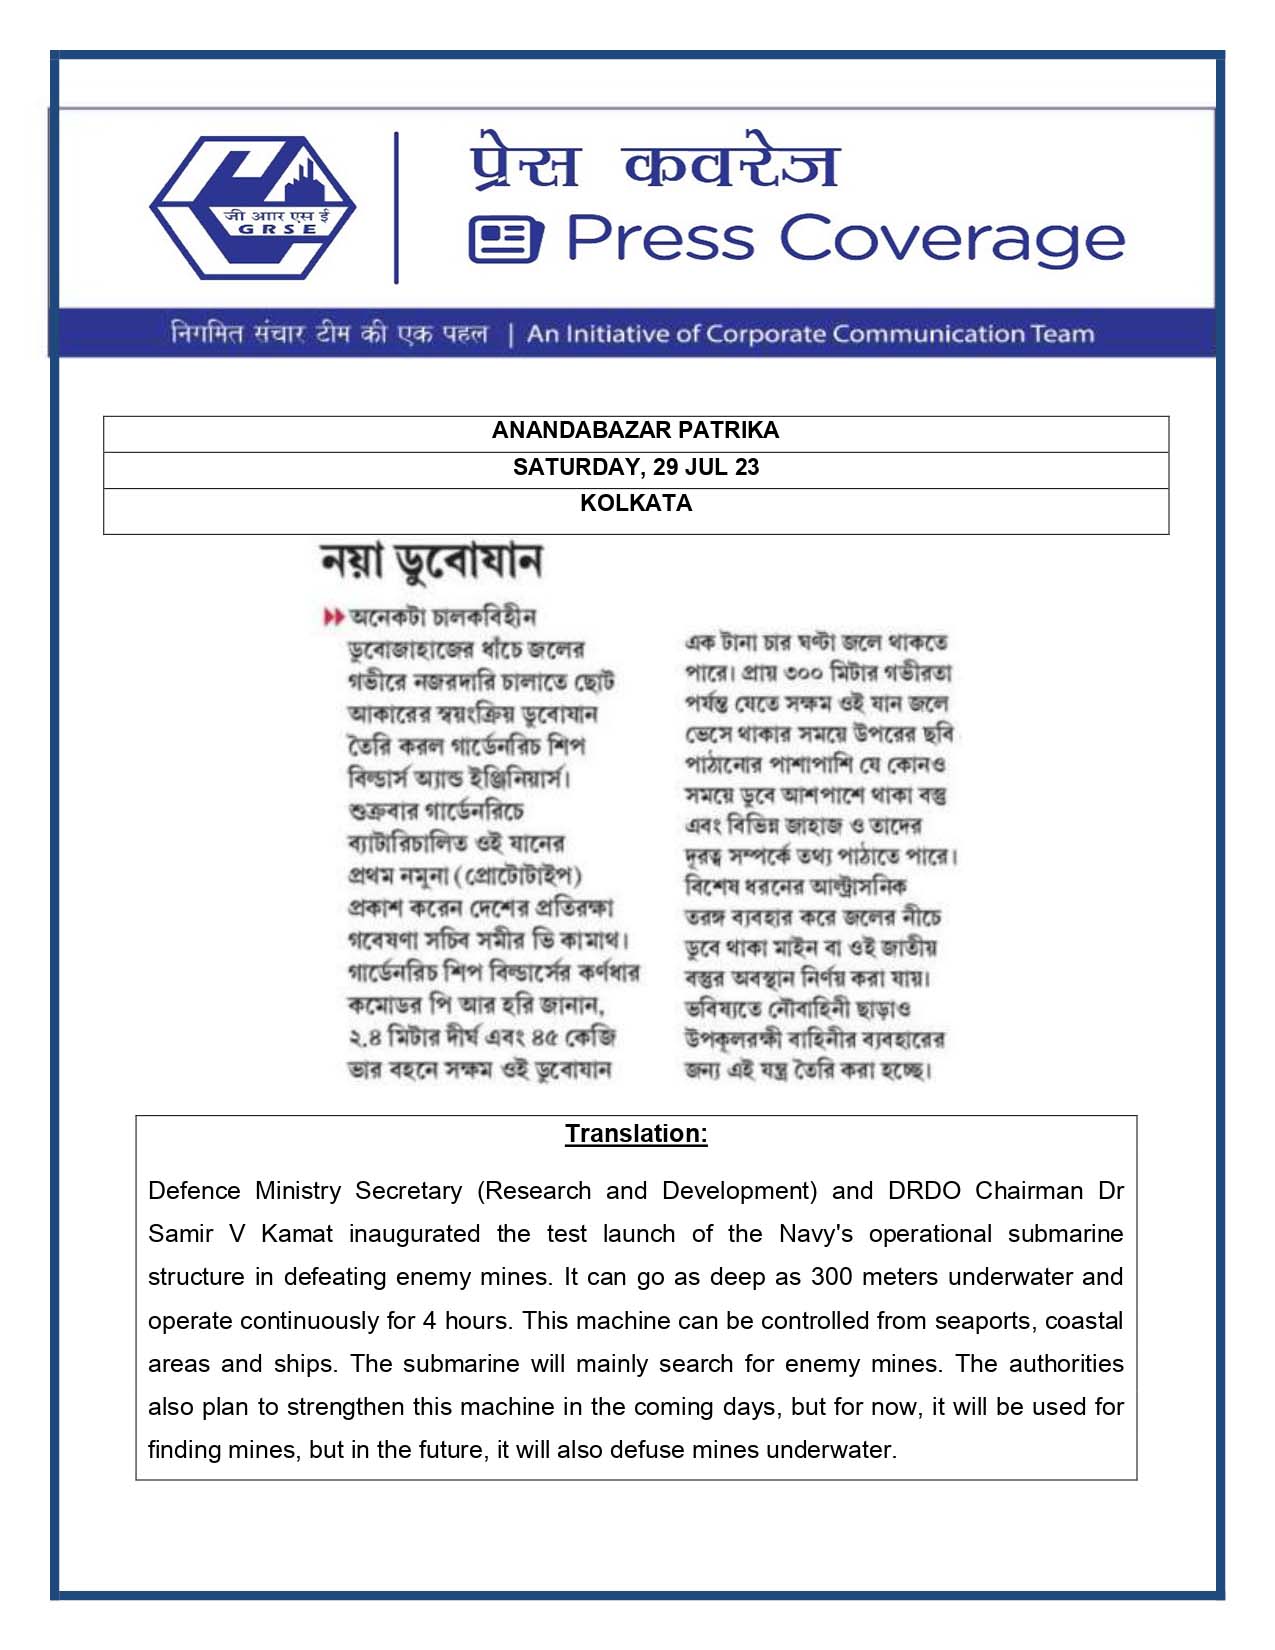 Press Coverage : Anandbazar Patrika, 29 Jul 23 : Mine Detector AUV Launched